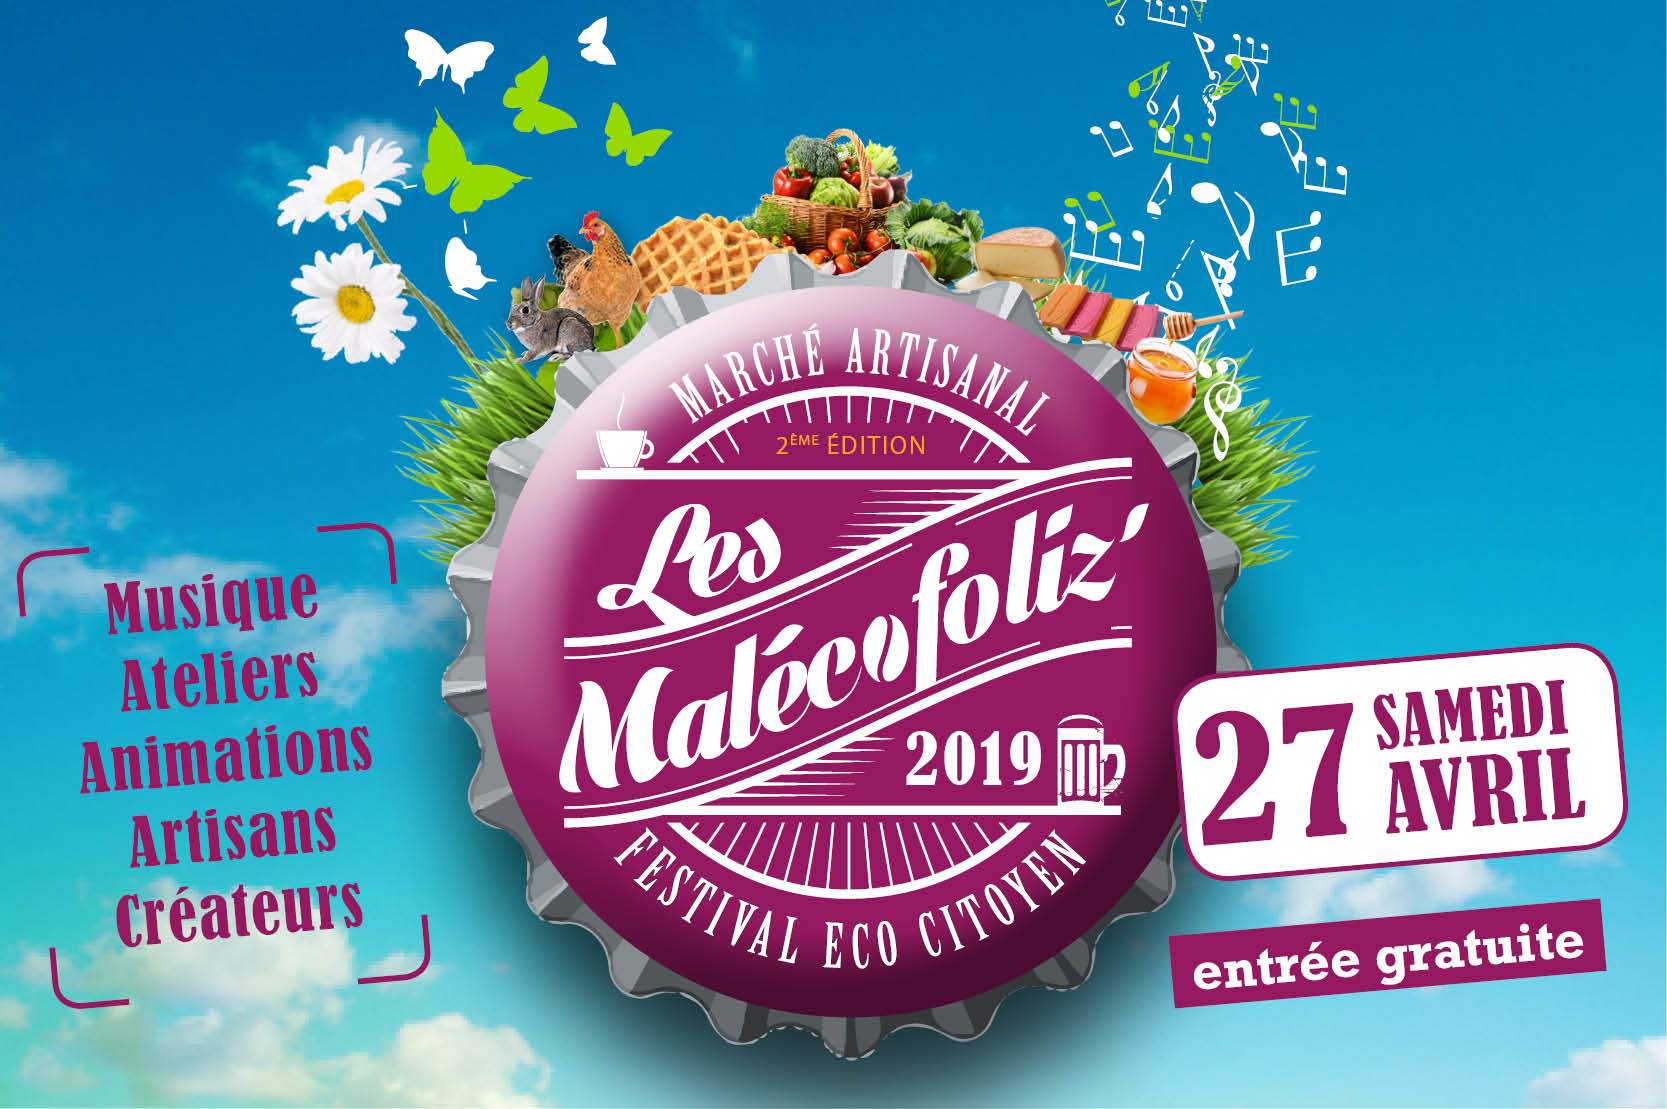 Malécofoliz' Armentières Esat 2019 Les Papillons Blancs de Lille